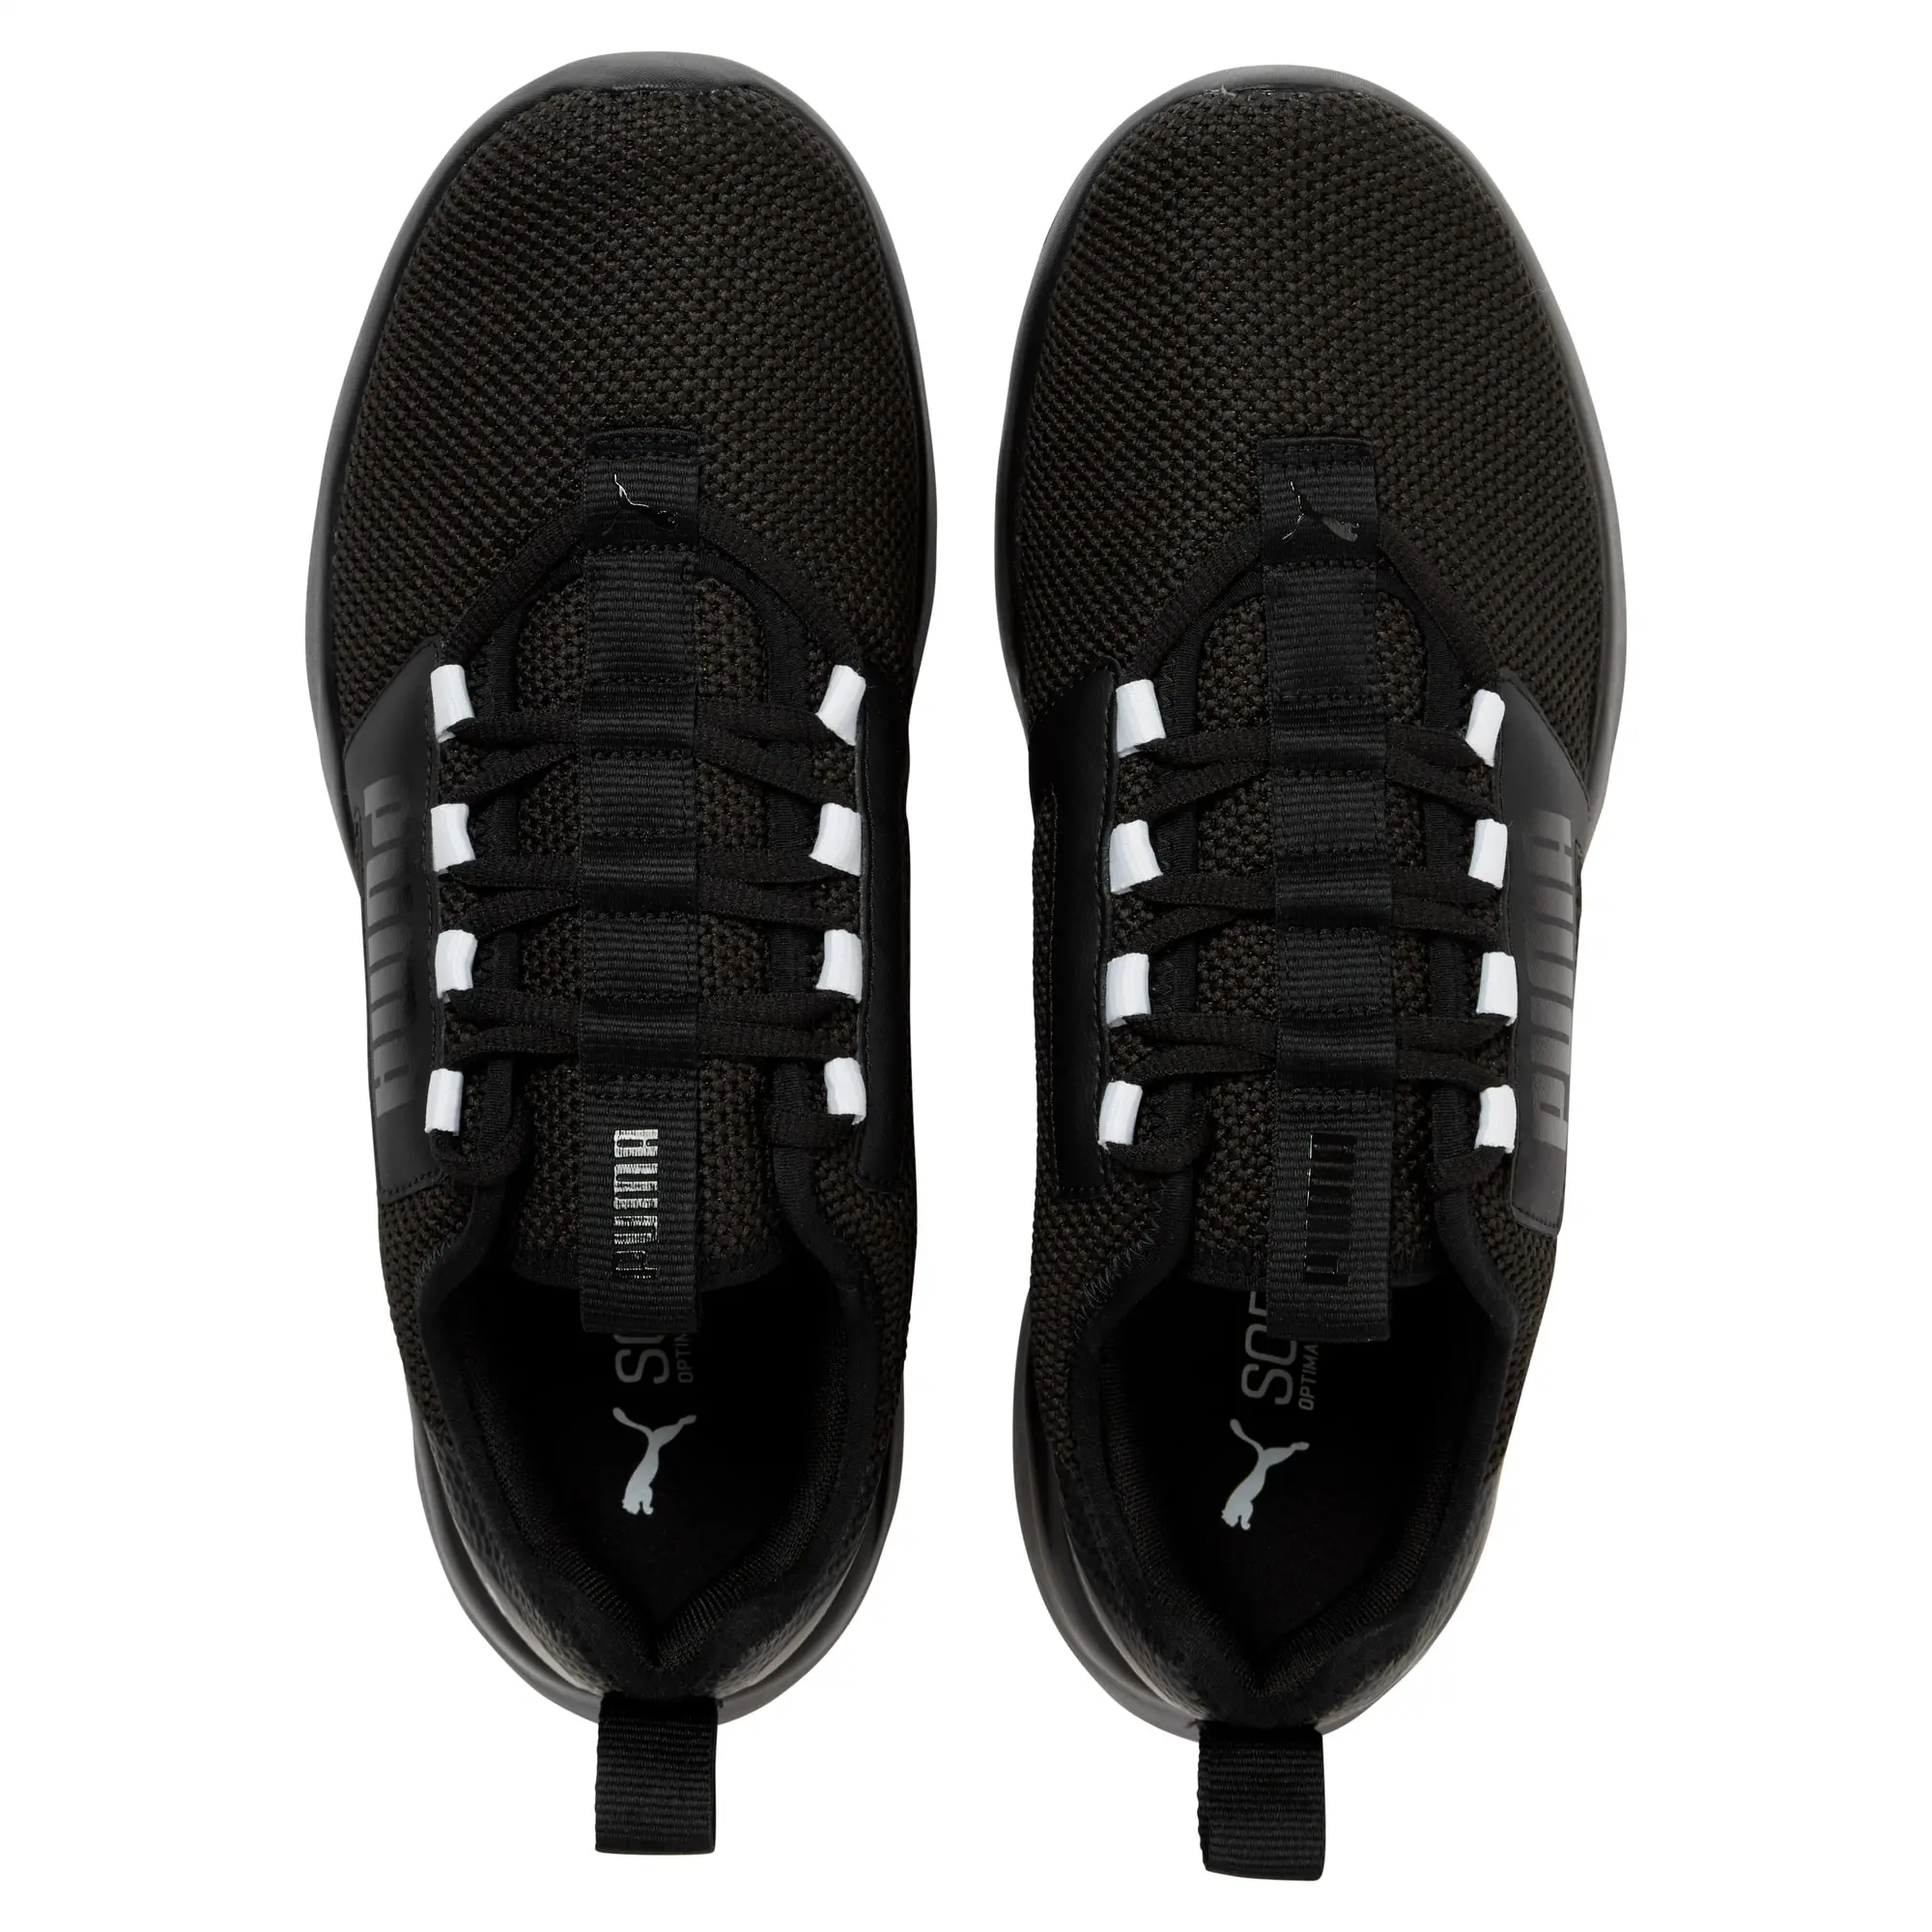 PUMA Retaliate Tongue Men's Running Shoes, Black